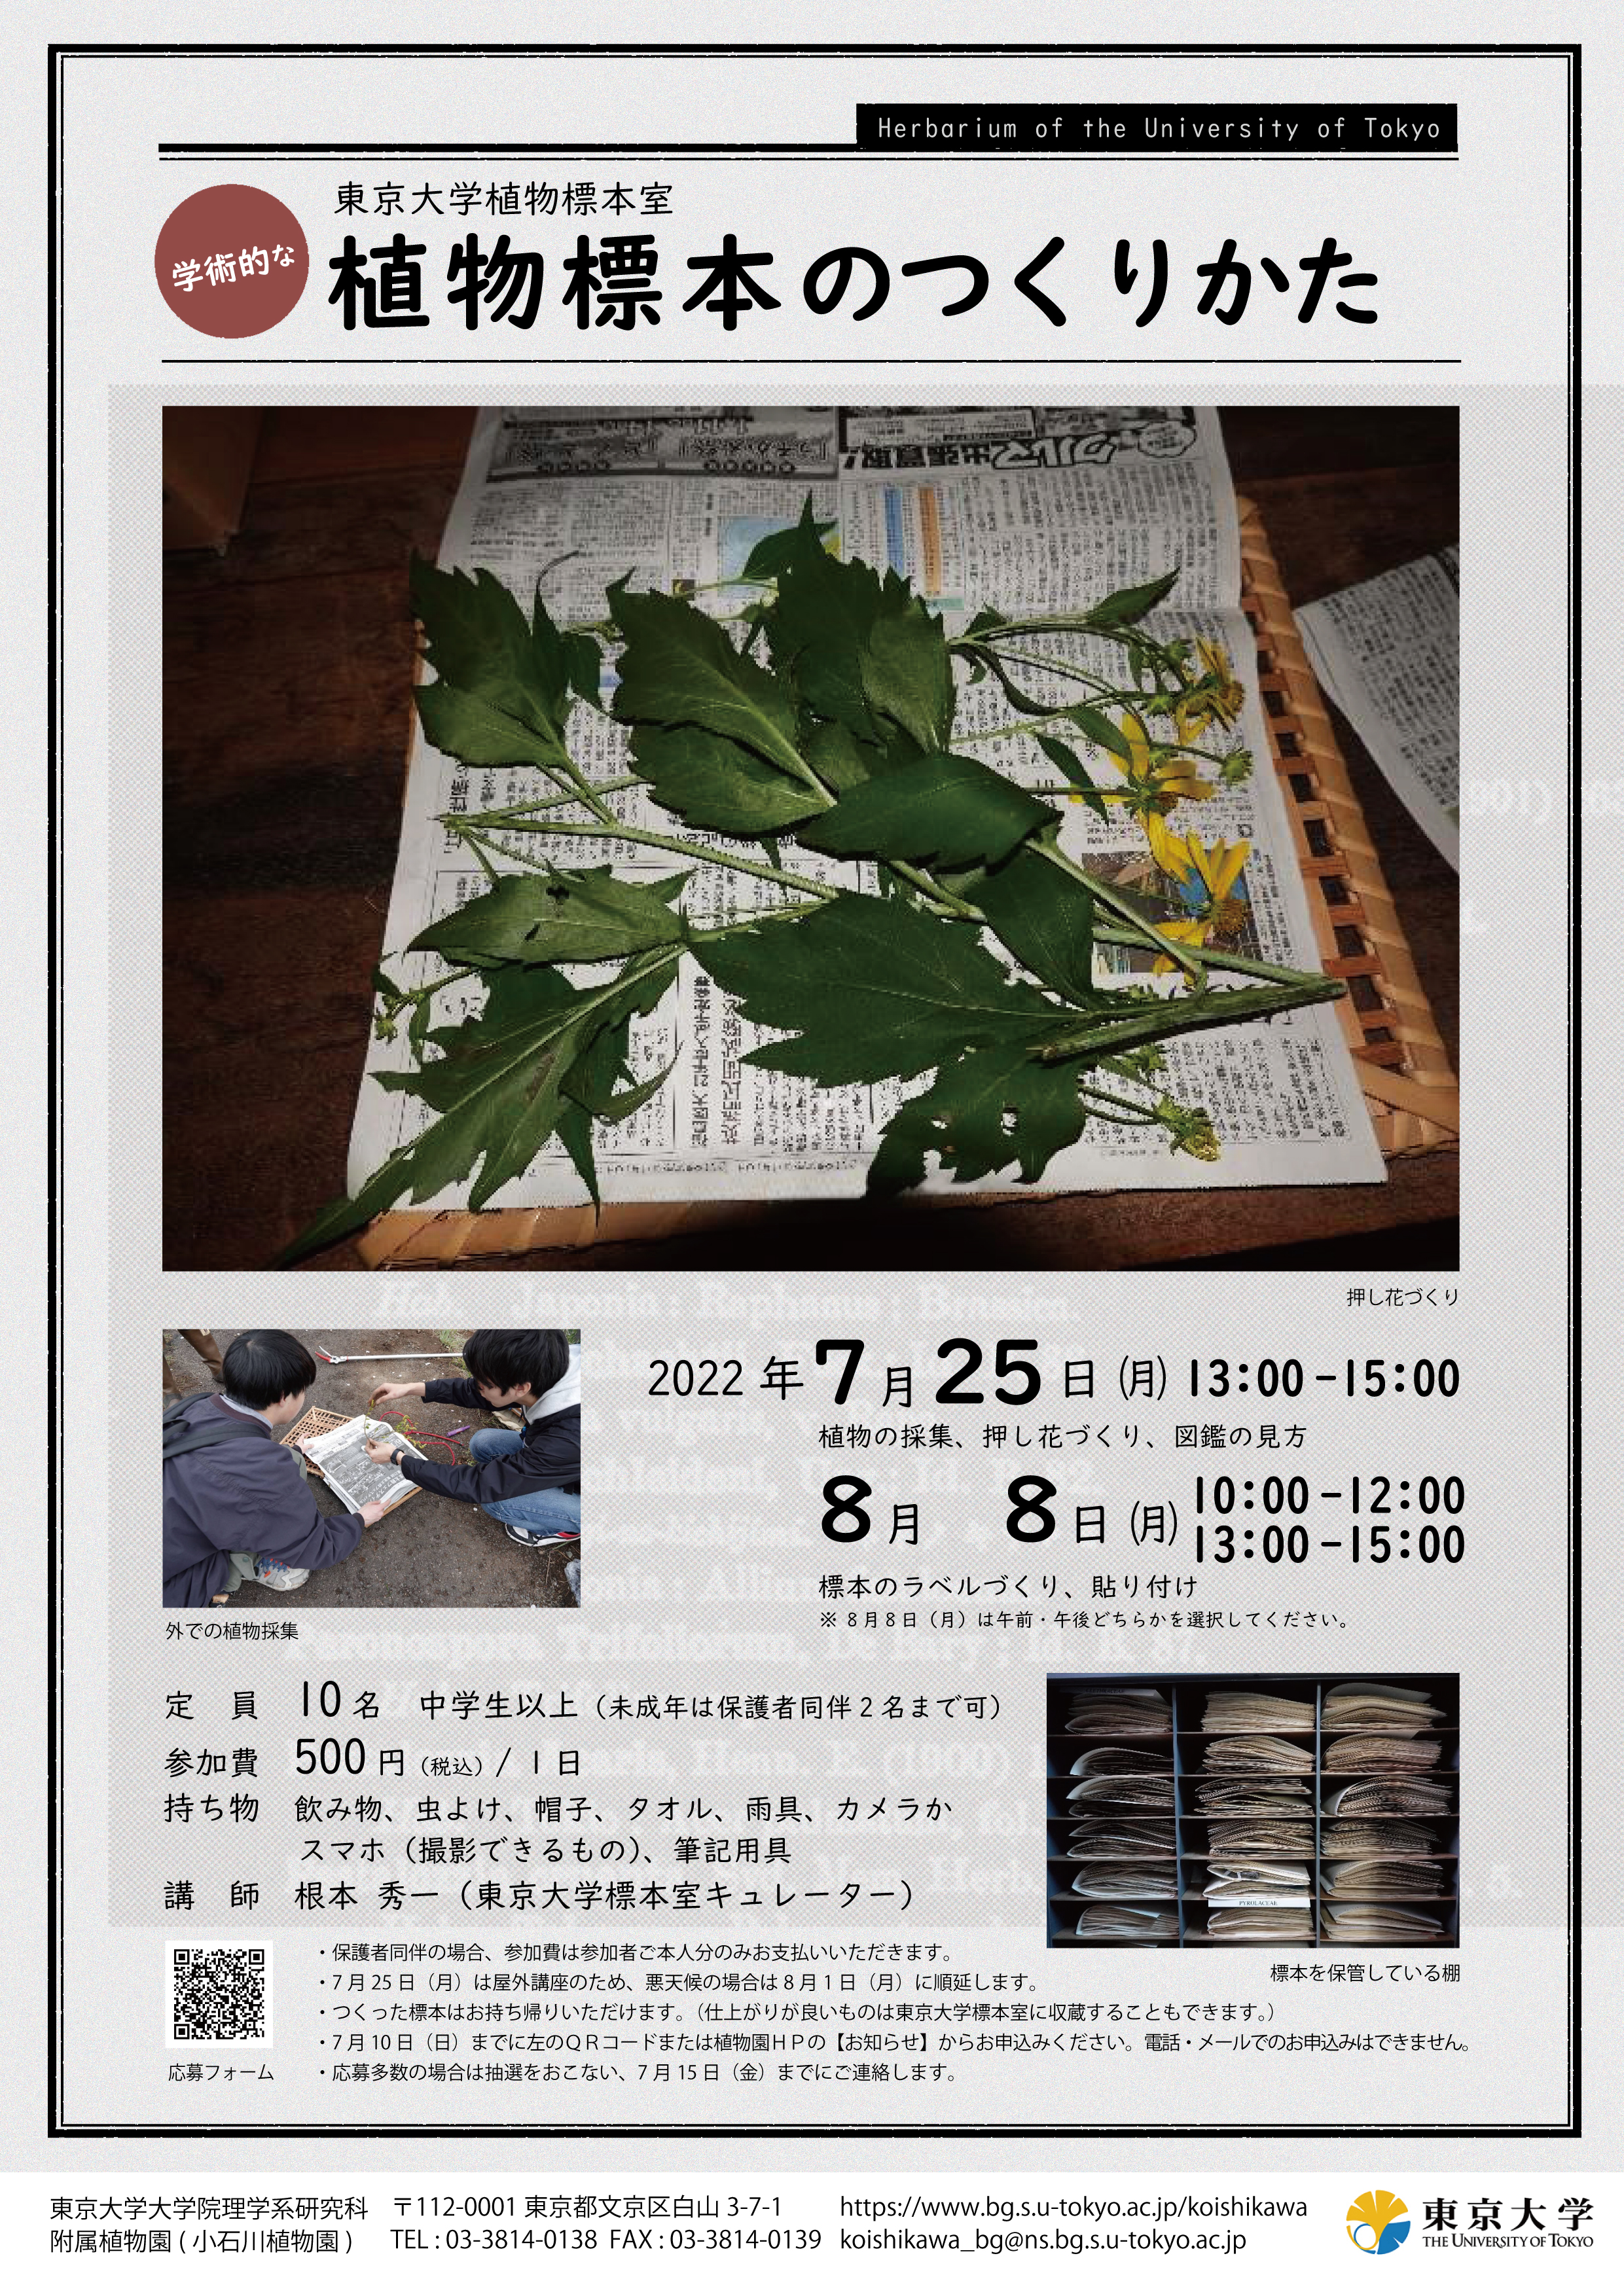 2022夏のイベント・東京大学植物標本室『学術的な植物標本のつくりかた』(小石川植物園)のご案内